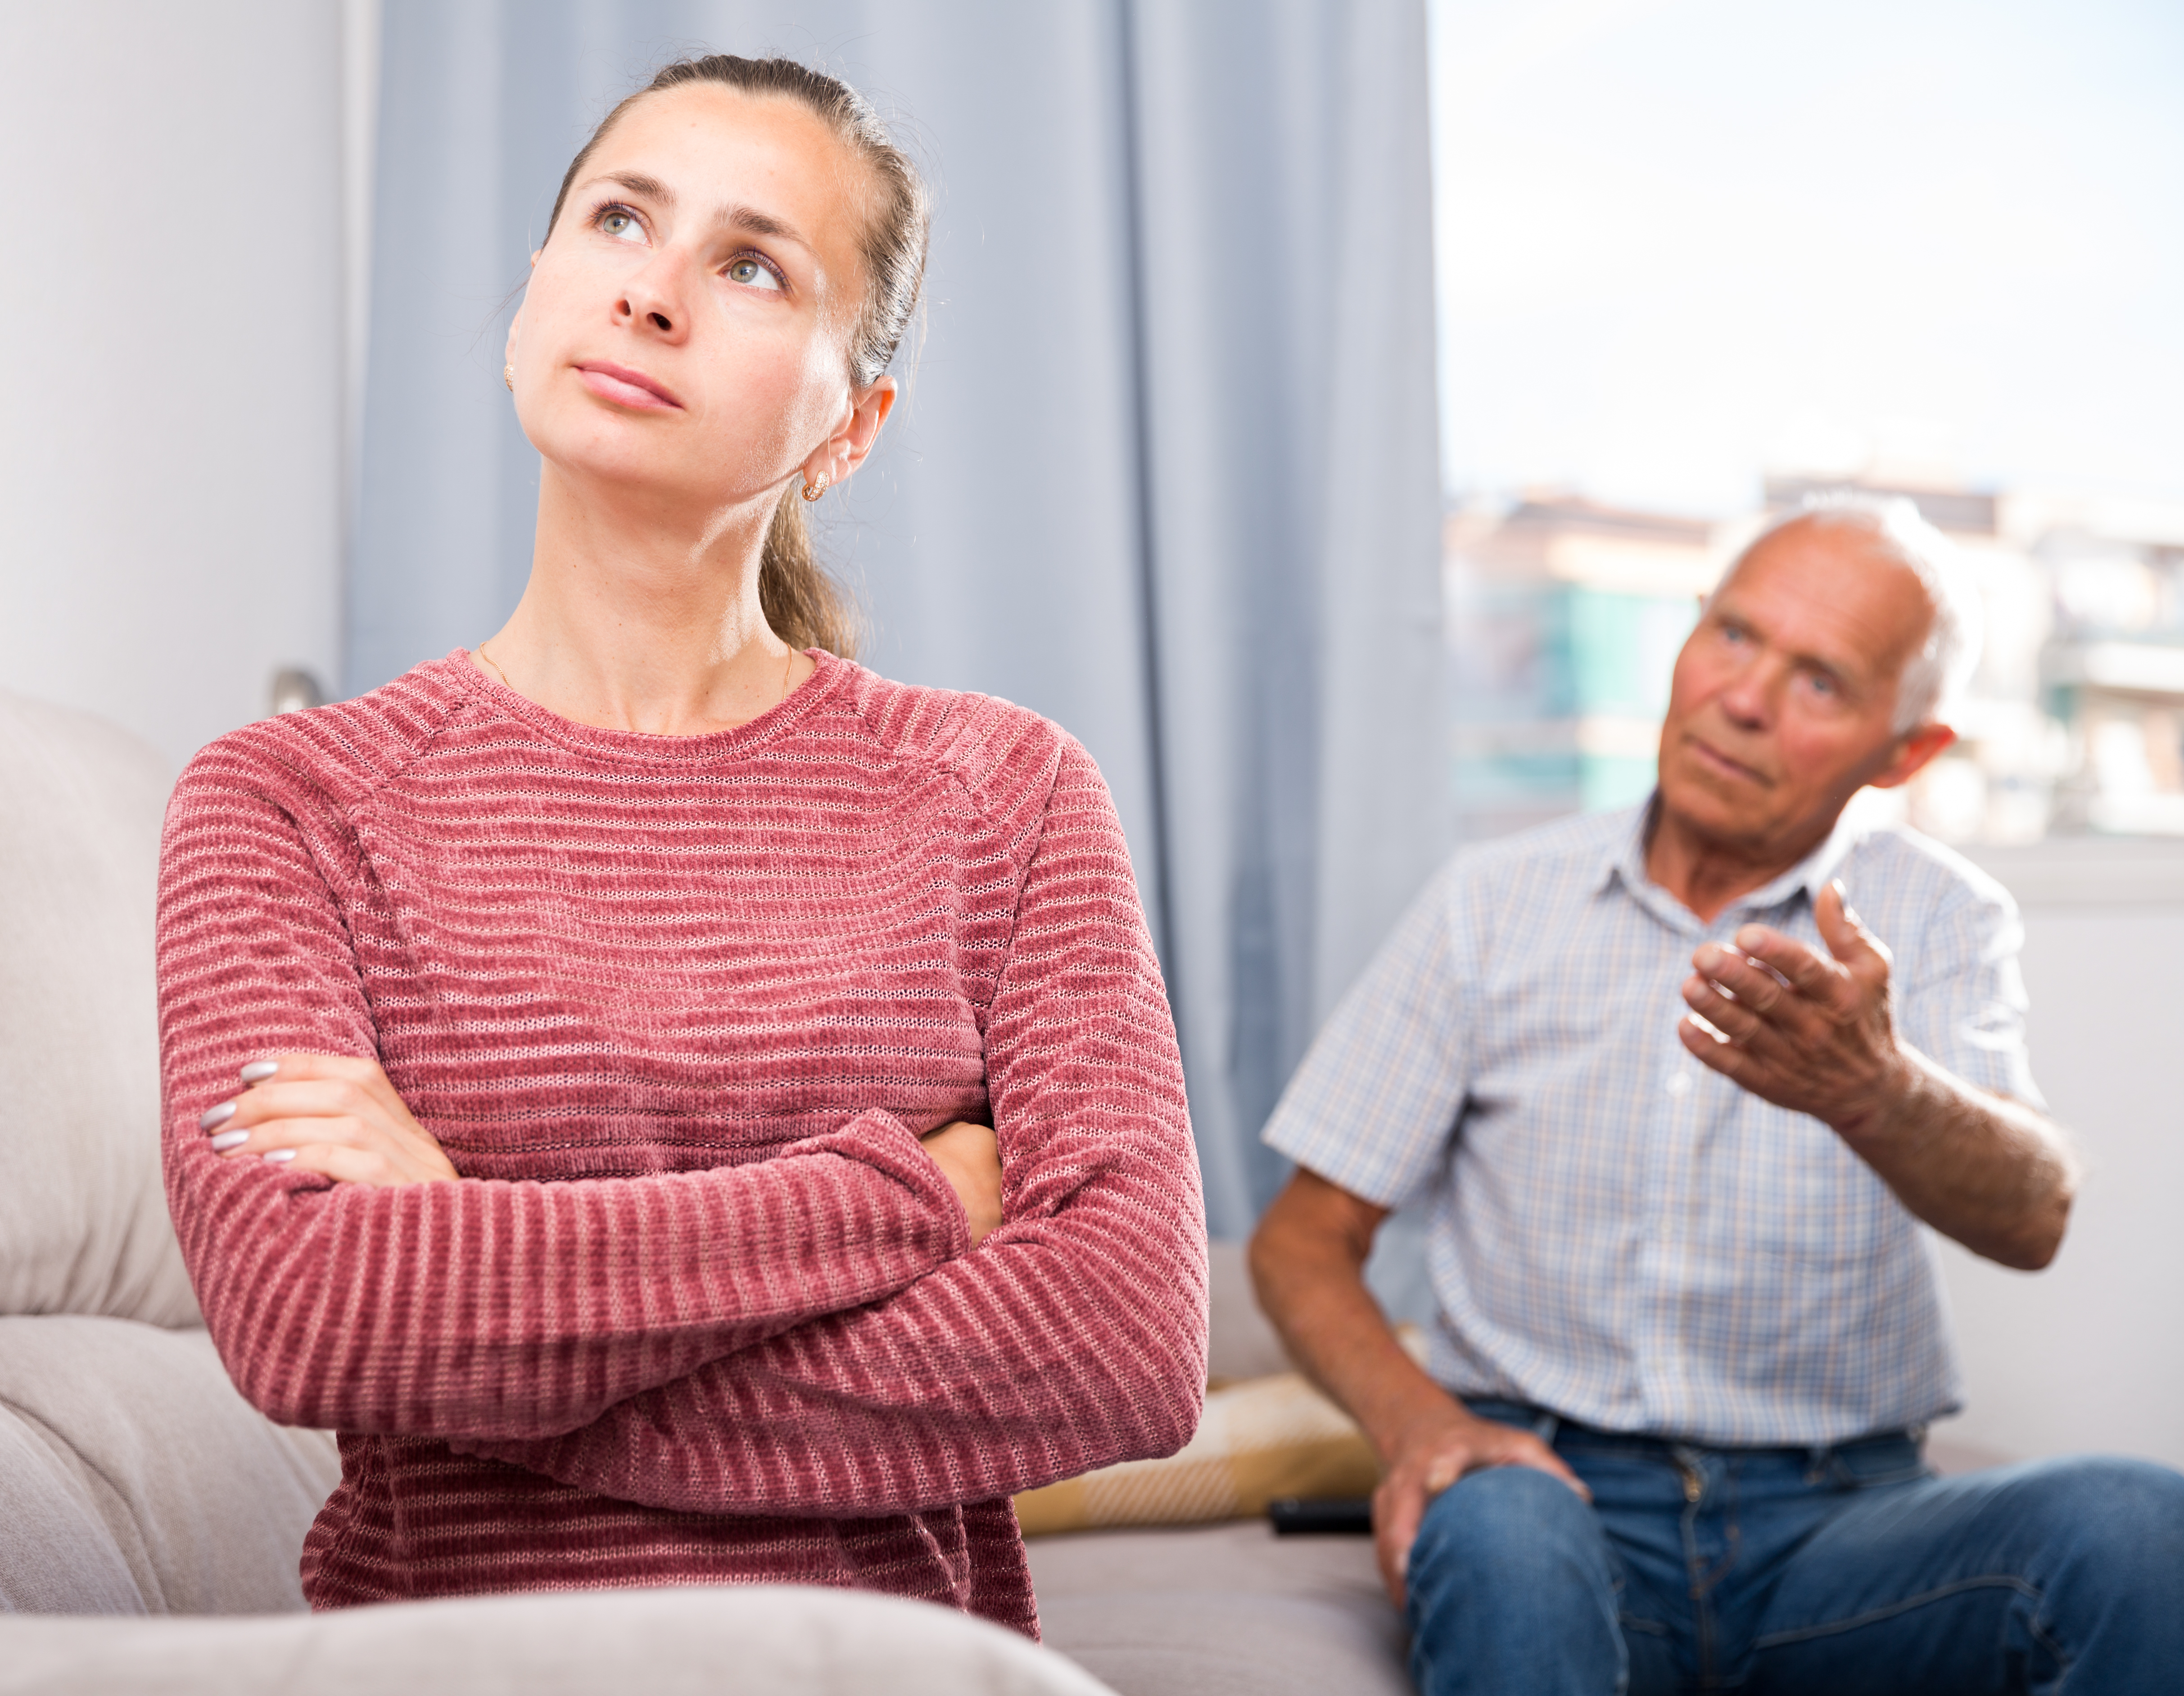 Un homme plus âgé ayant une discussion animée avec une femme plus jeune | Source : Shutterstock